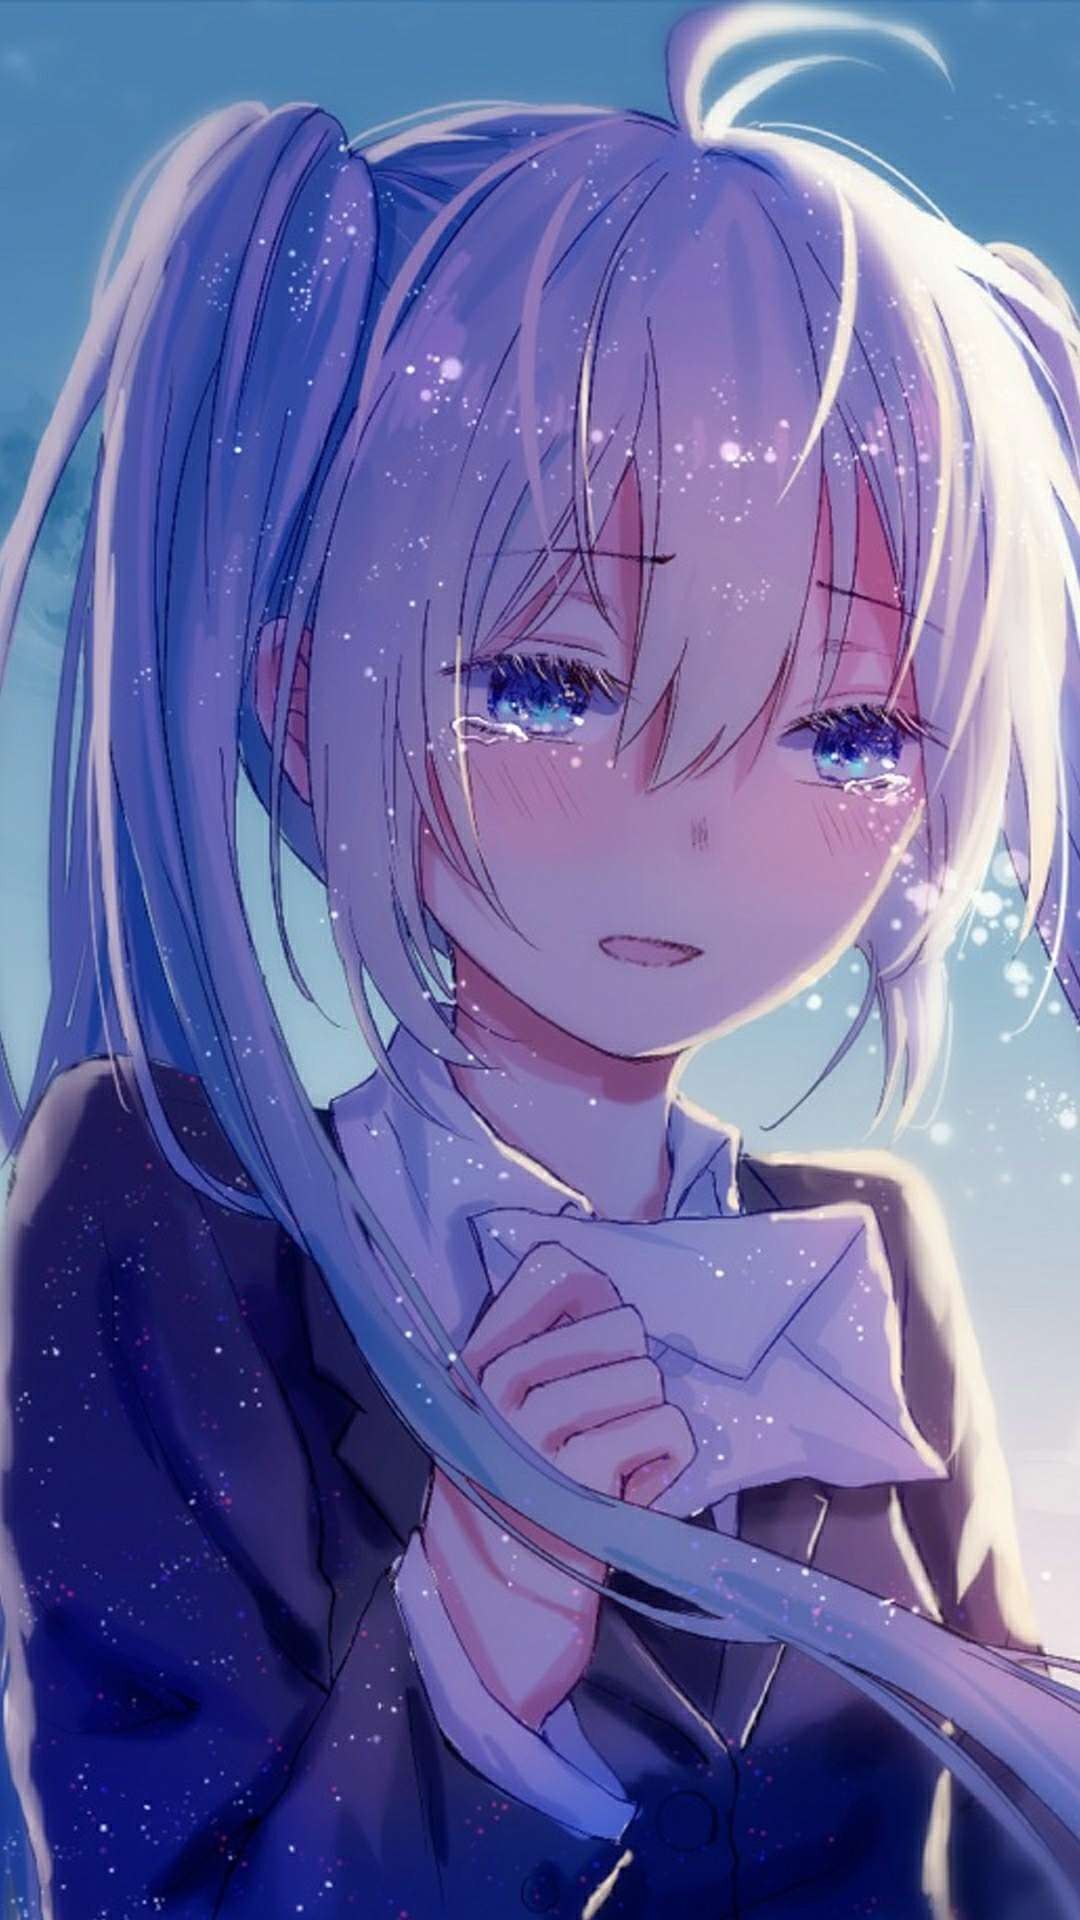 ảnh hoạt hình buồn đẹp nhất cô gái anime buồn khóc nhìn bức thư